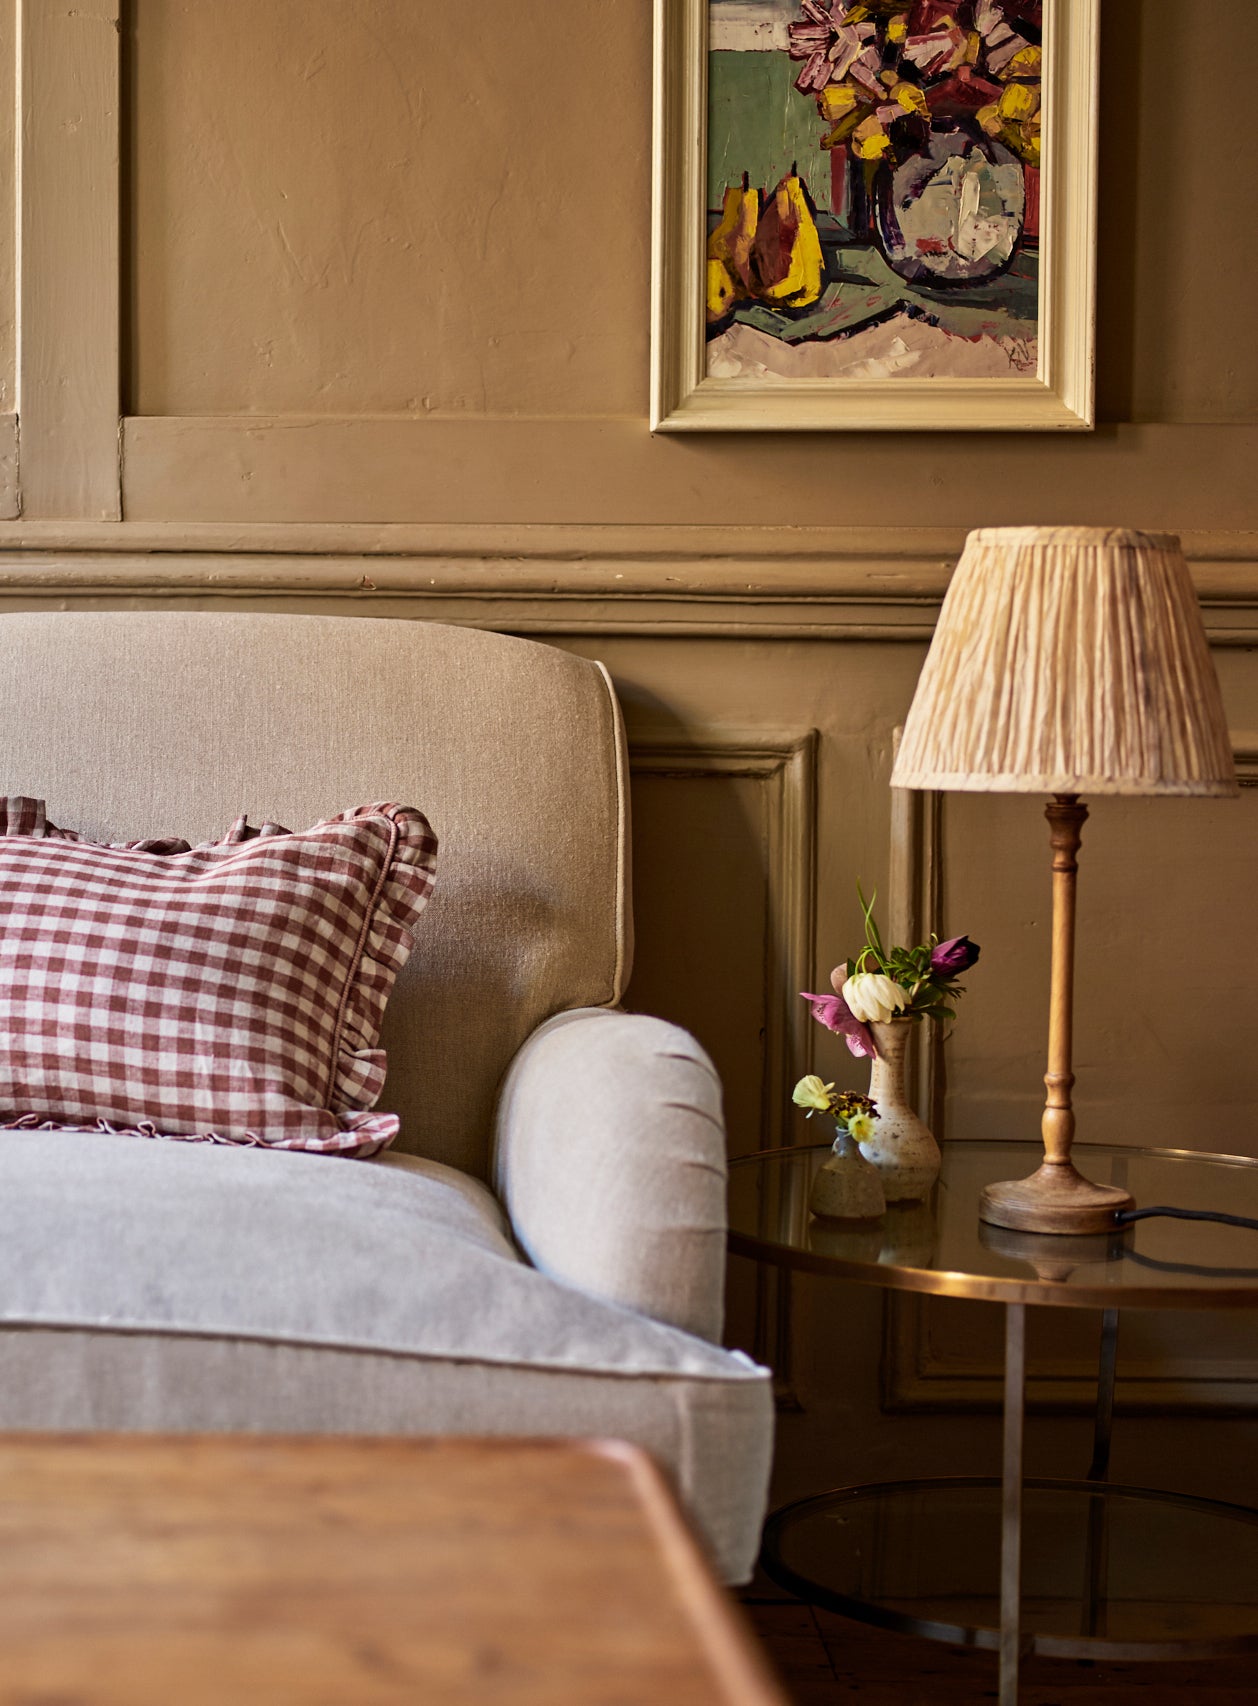 Abington Sofa, Natural Linen